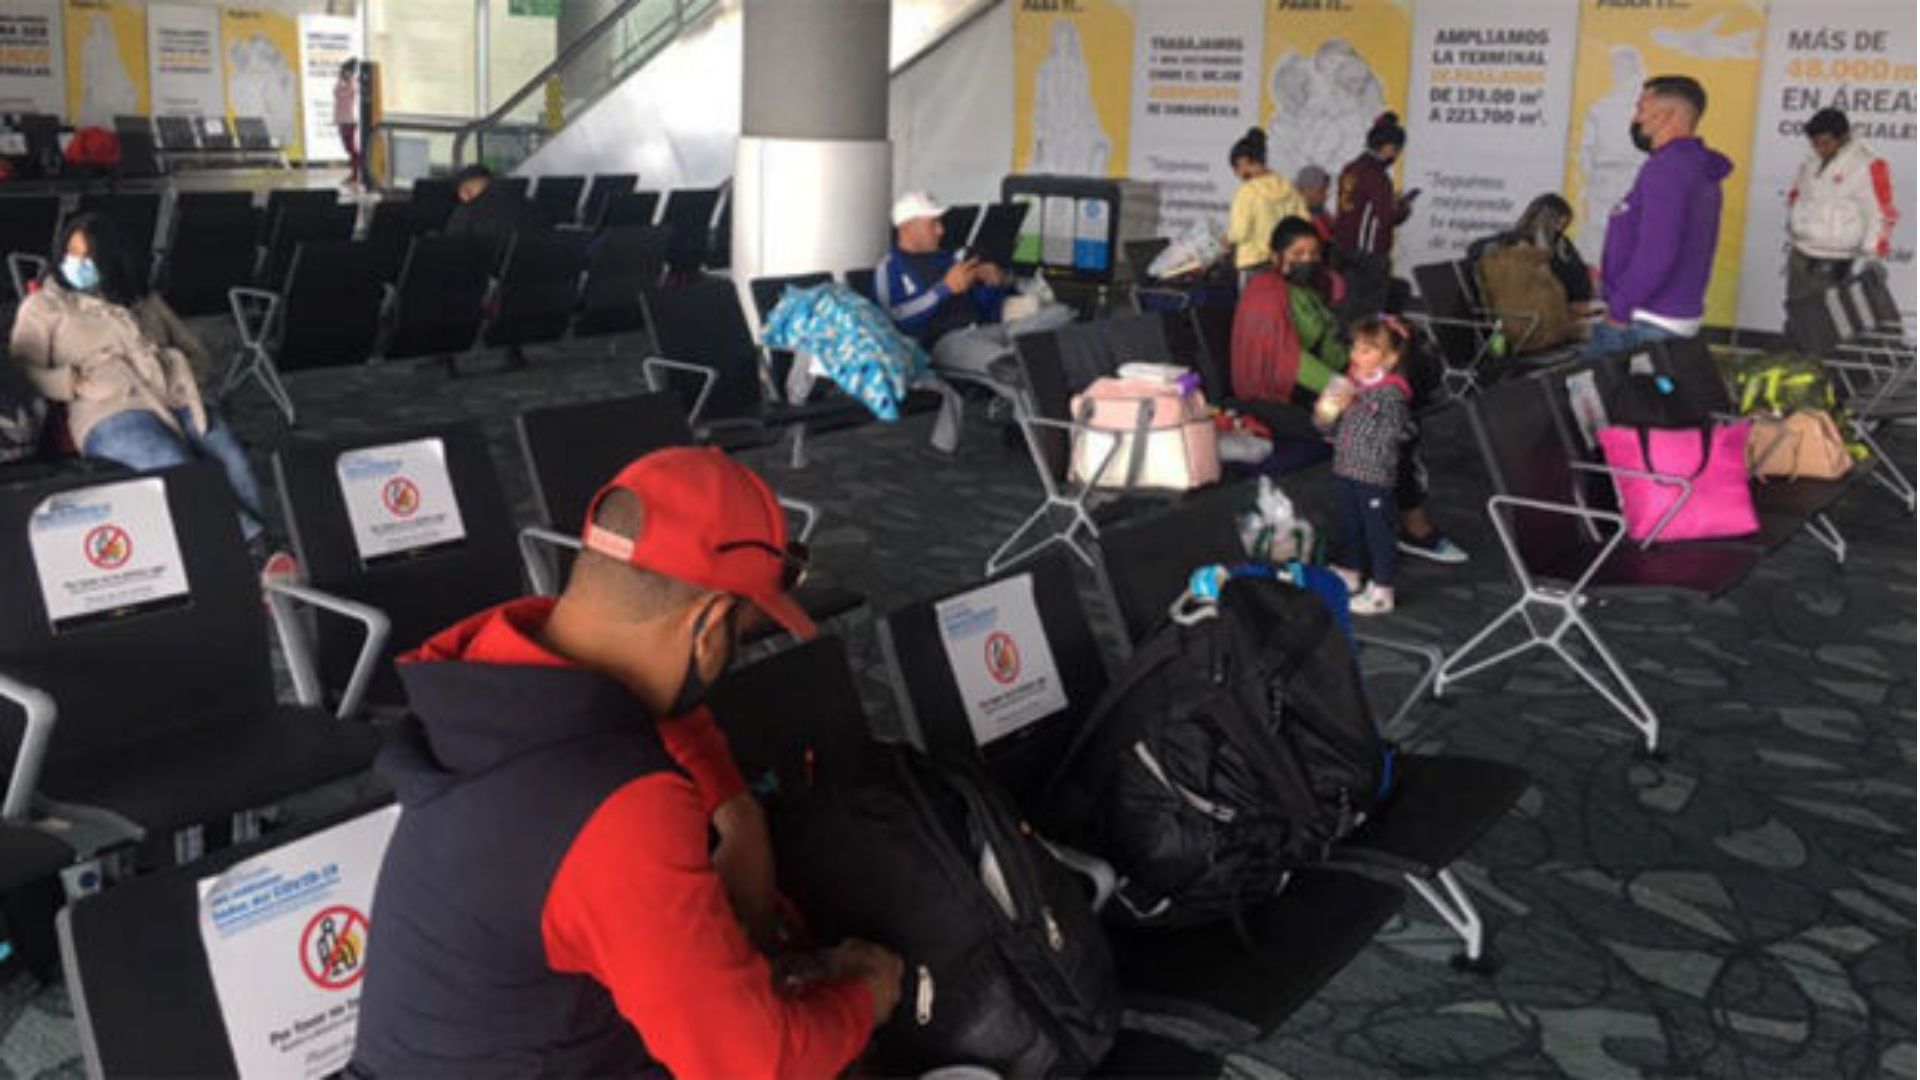 Cubanos quedan varados en aeropuerto de Colombia por "visados falsos"